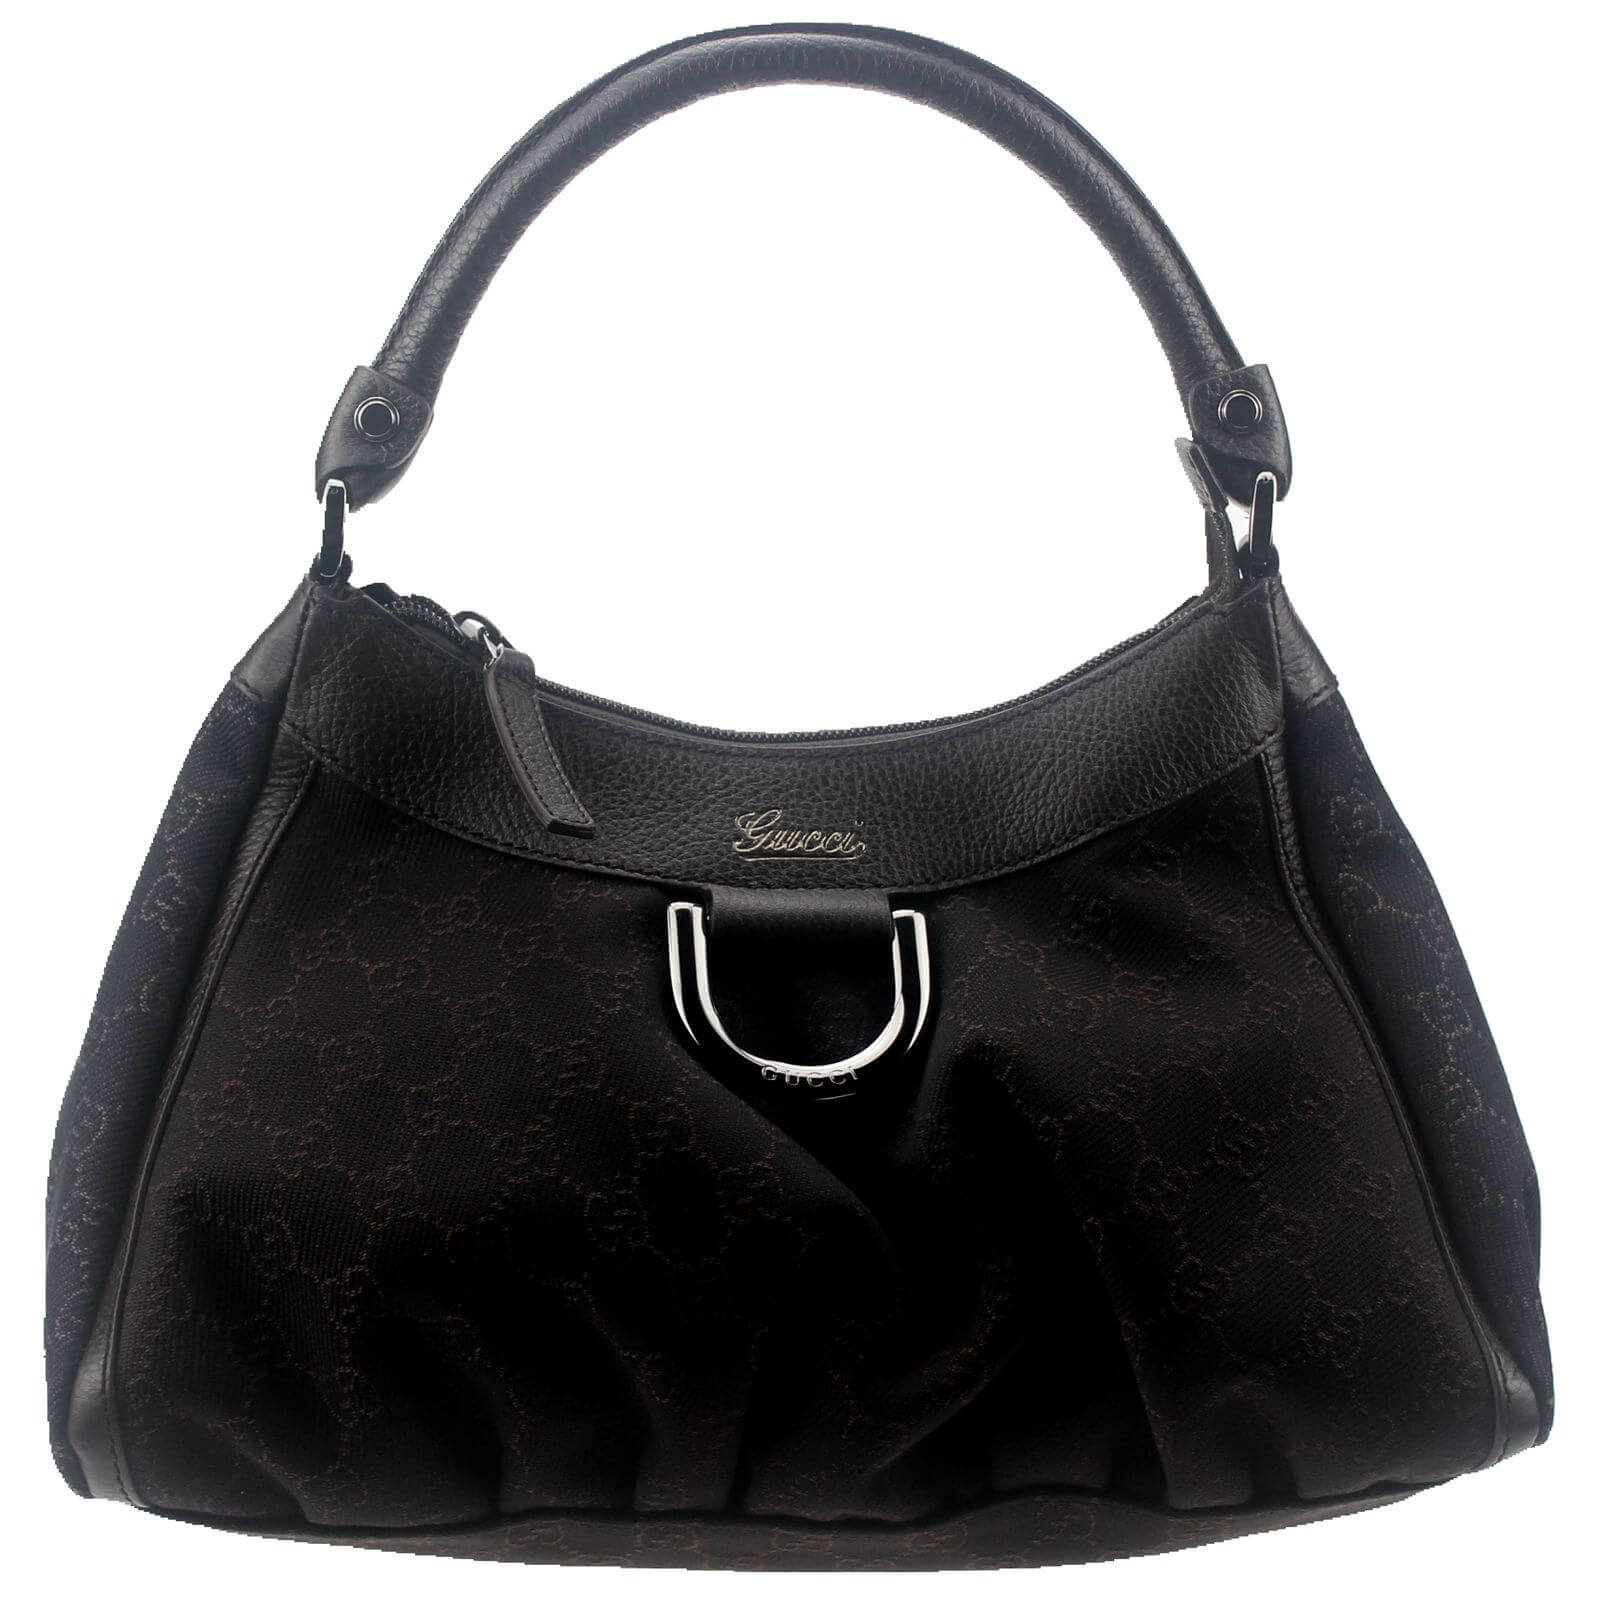 black gucci purse sale